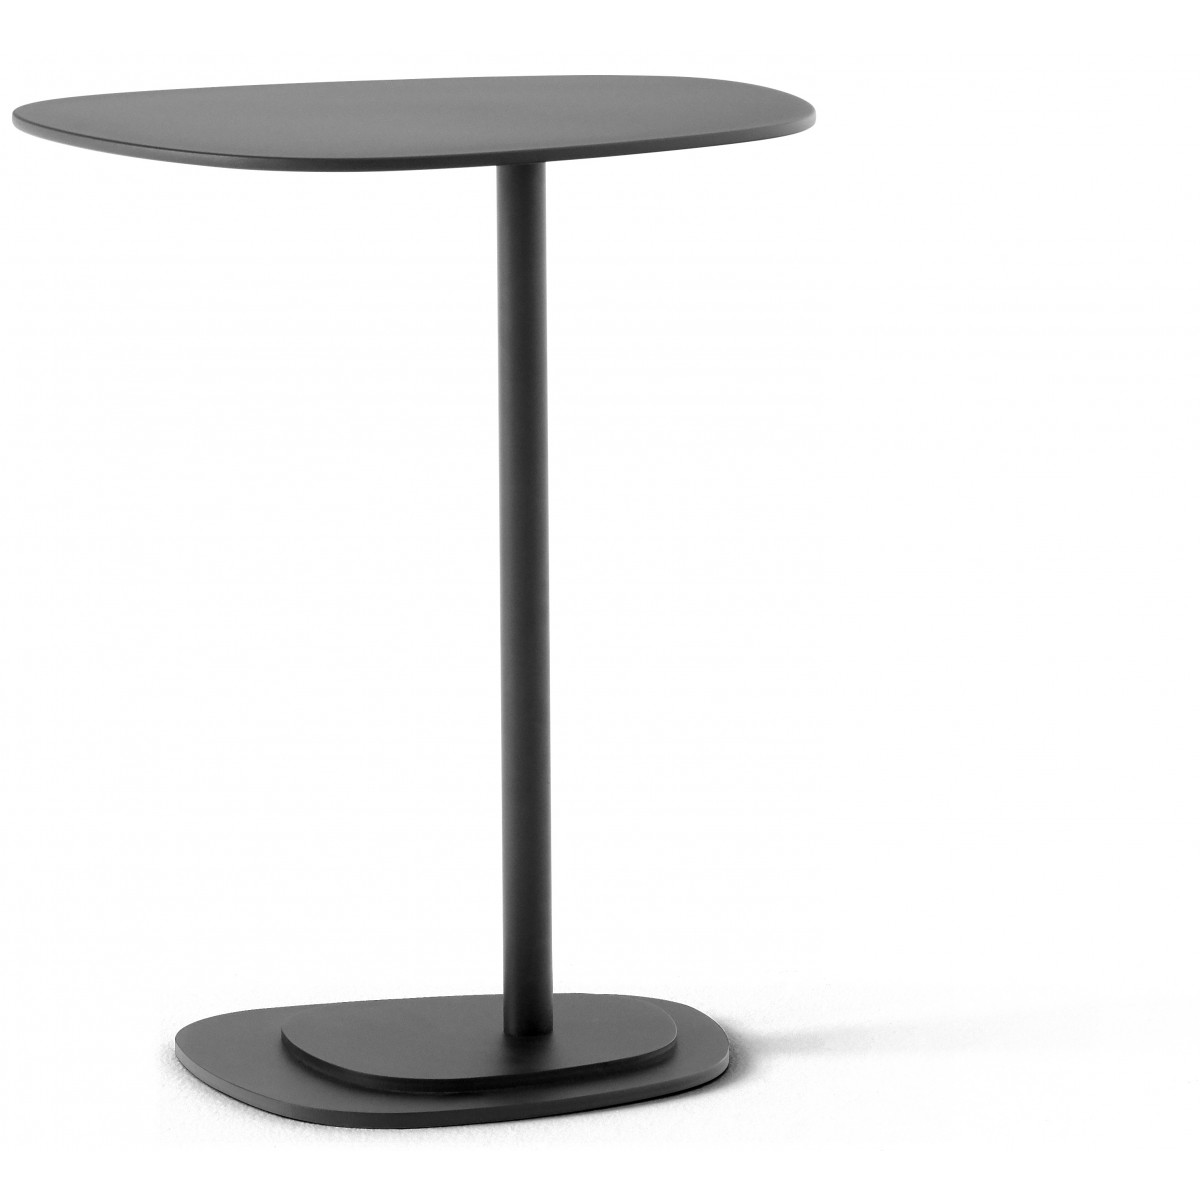 H58 cm - Insula Picolo 5198 table